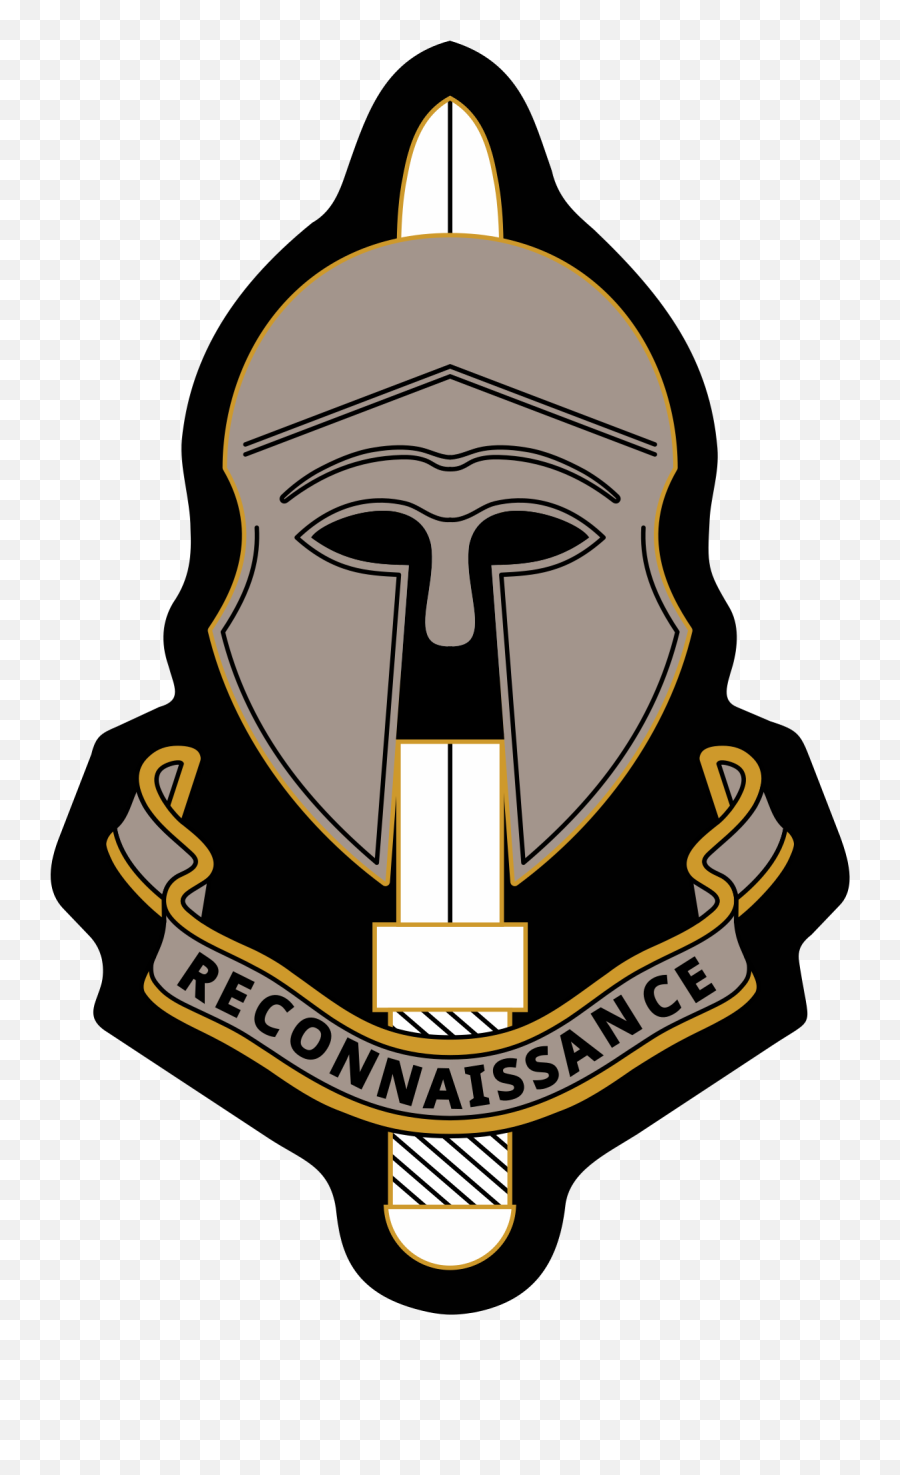 Special Reconnaissance Regiment - Special Reconnaissance Regiment Cap Badge Emoji,Special Forces Intelligence Sergeant Emoticons